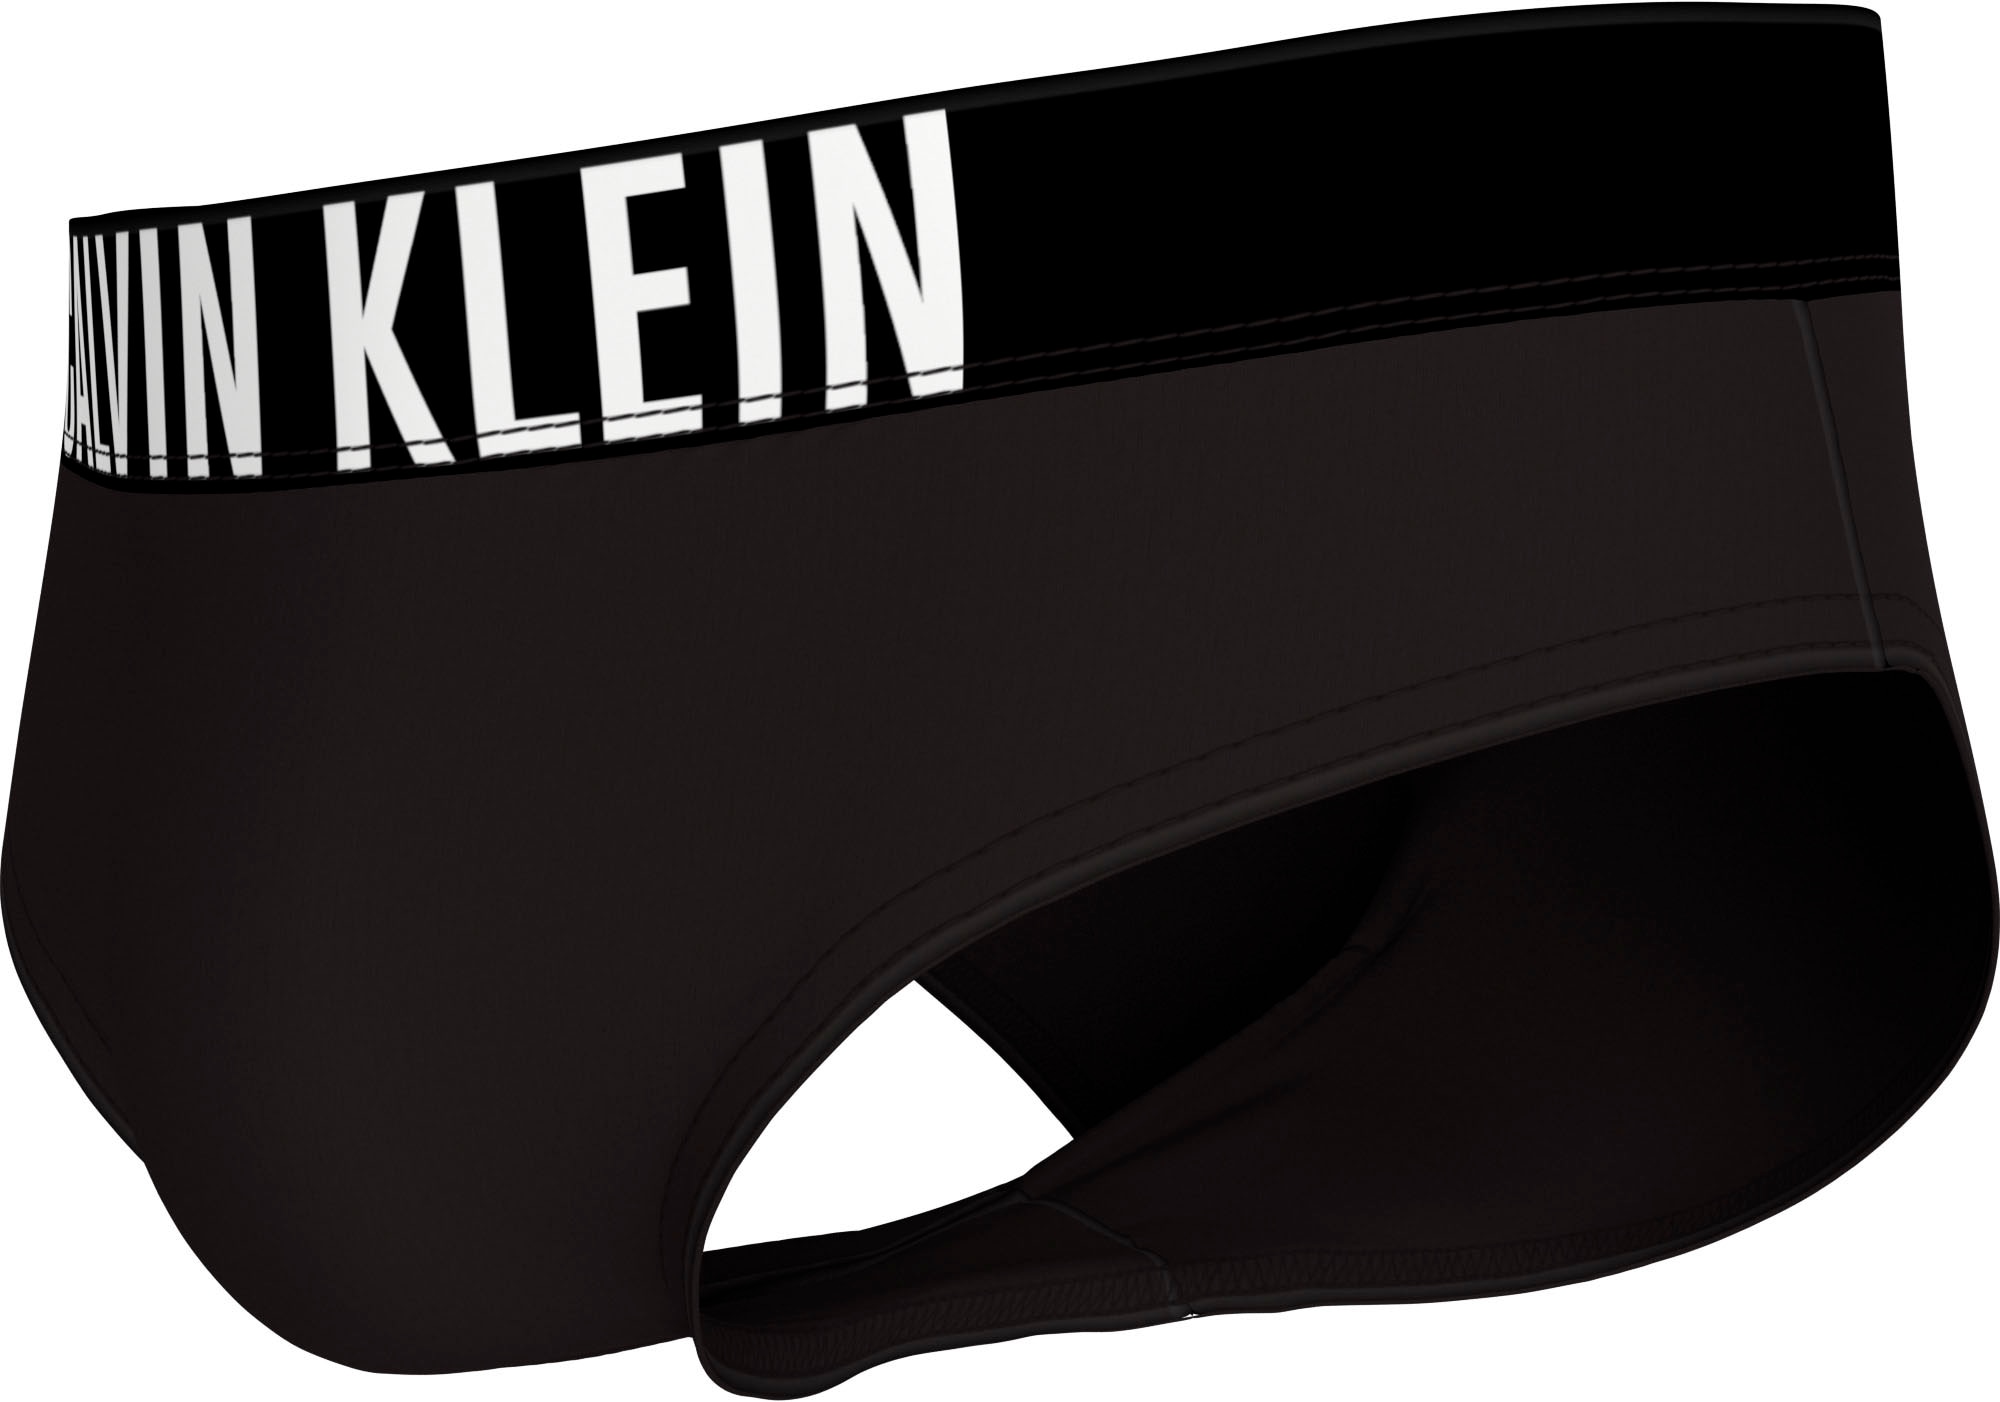 Calvin Klein Swimwear Badeslip »BRIEF WB«, Mit Calvin Klein Logobund